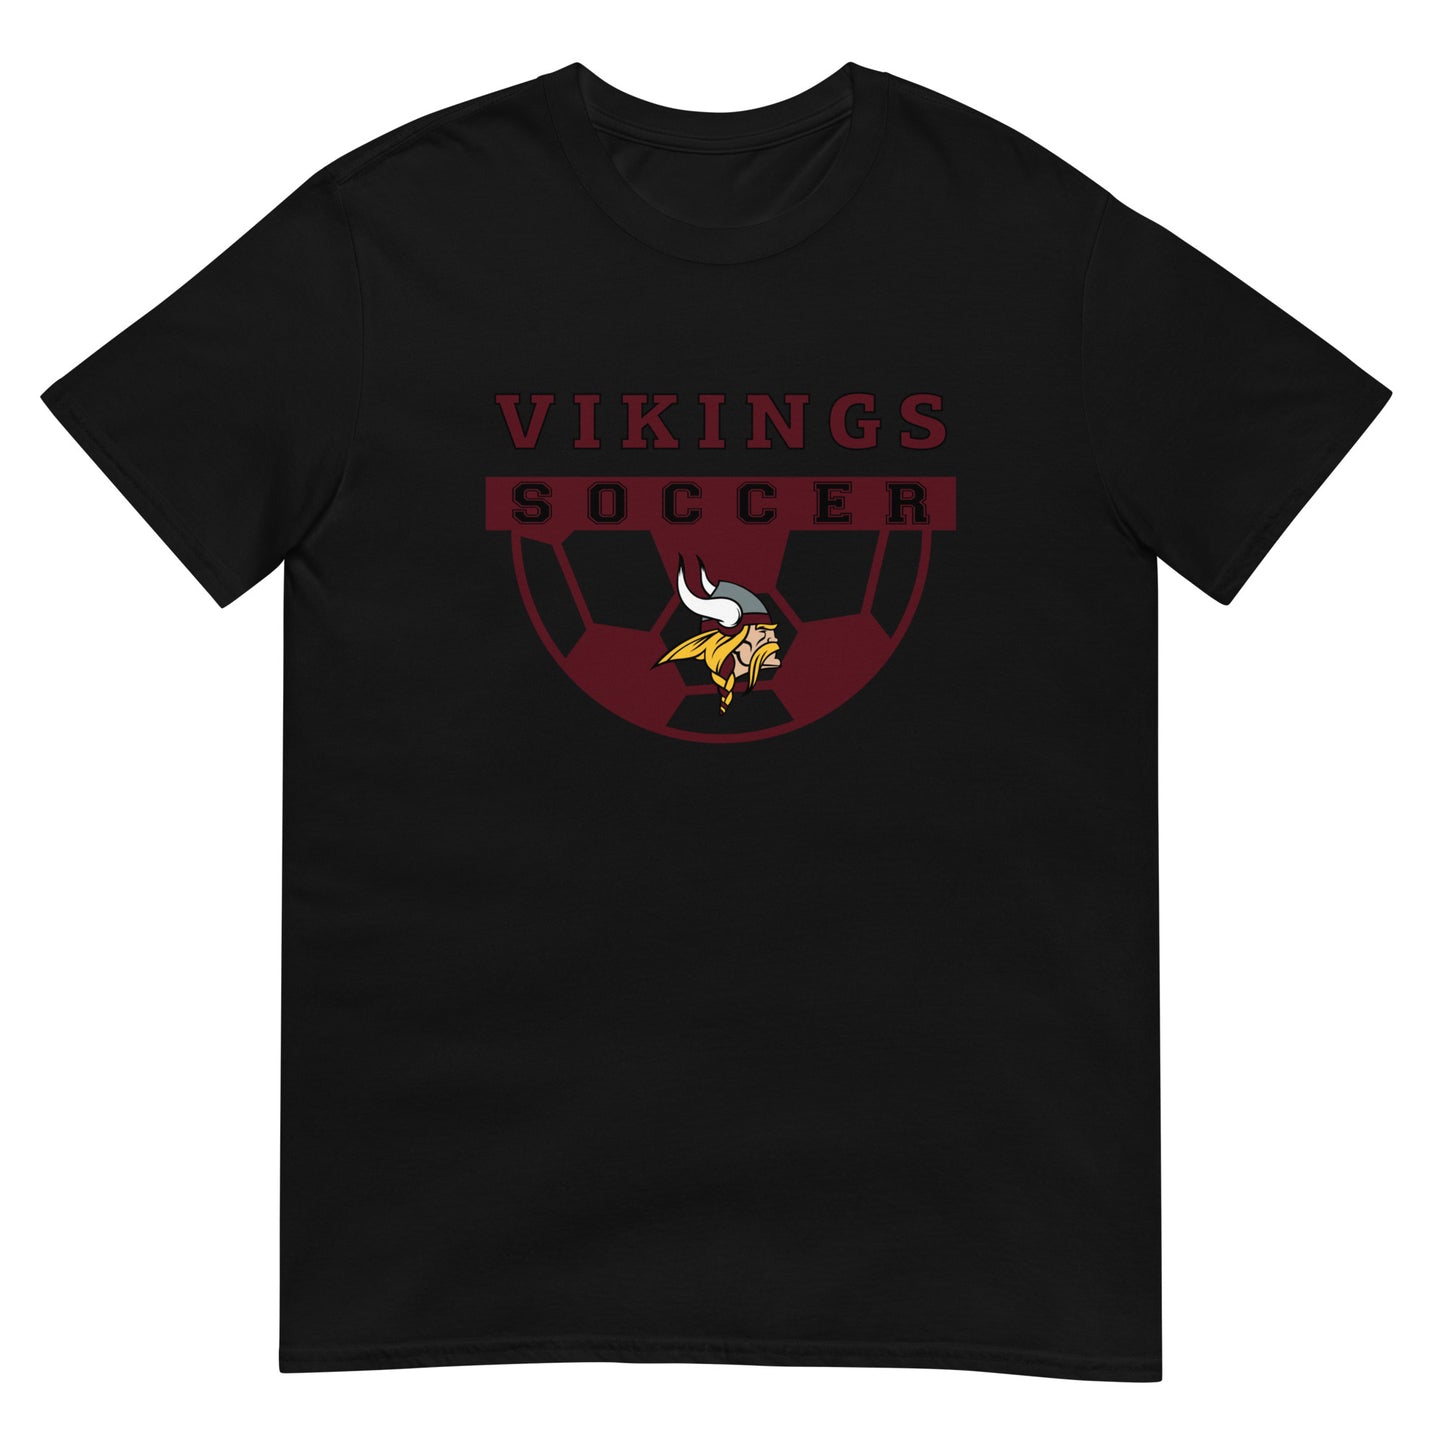 Viking Soccer Short-Sleeve Unisex T-Shirt